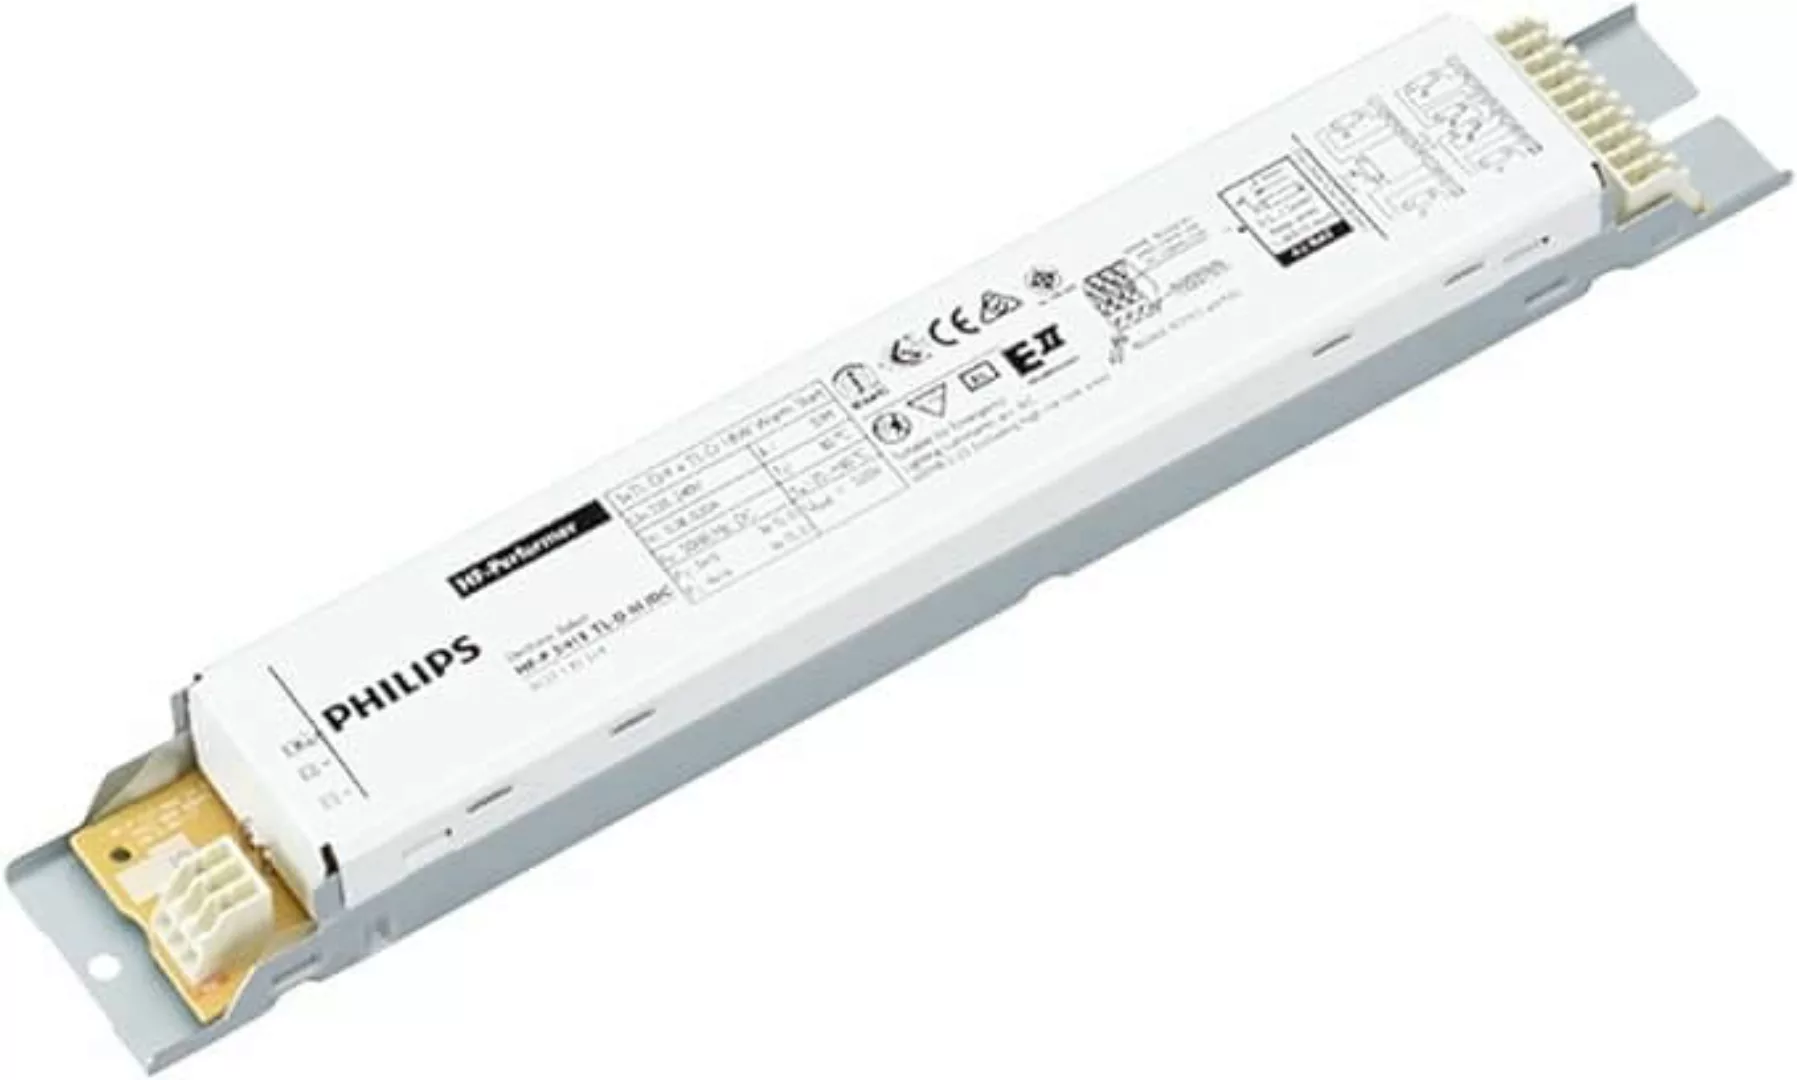 Philips FL-EVG HF-P 3/418 TL-D III 220-240V 50/60Hz IDC - 913713031466 günstig online kaufen